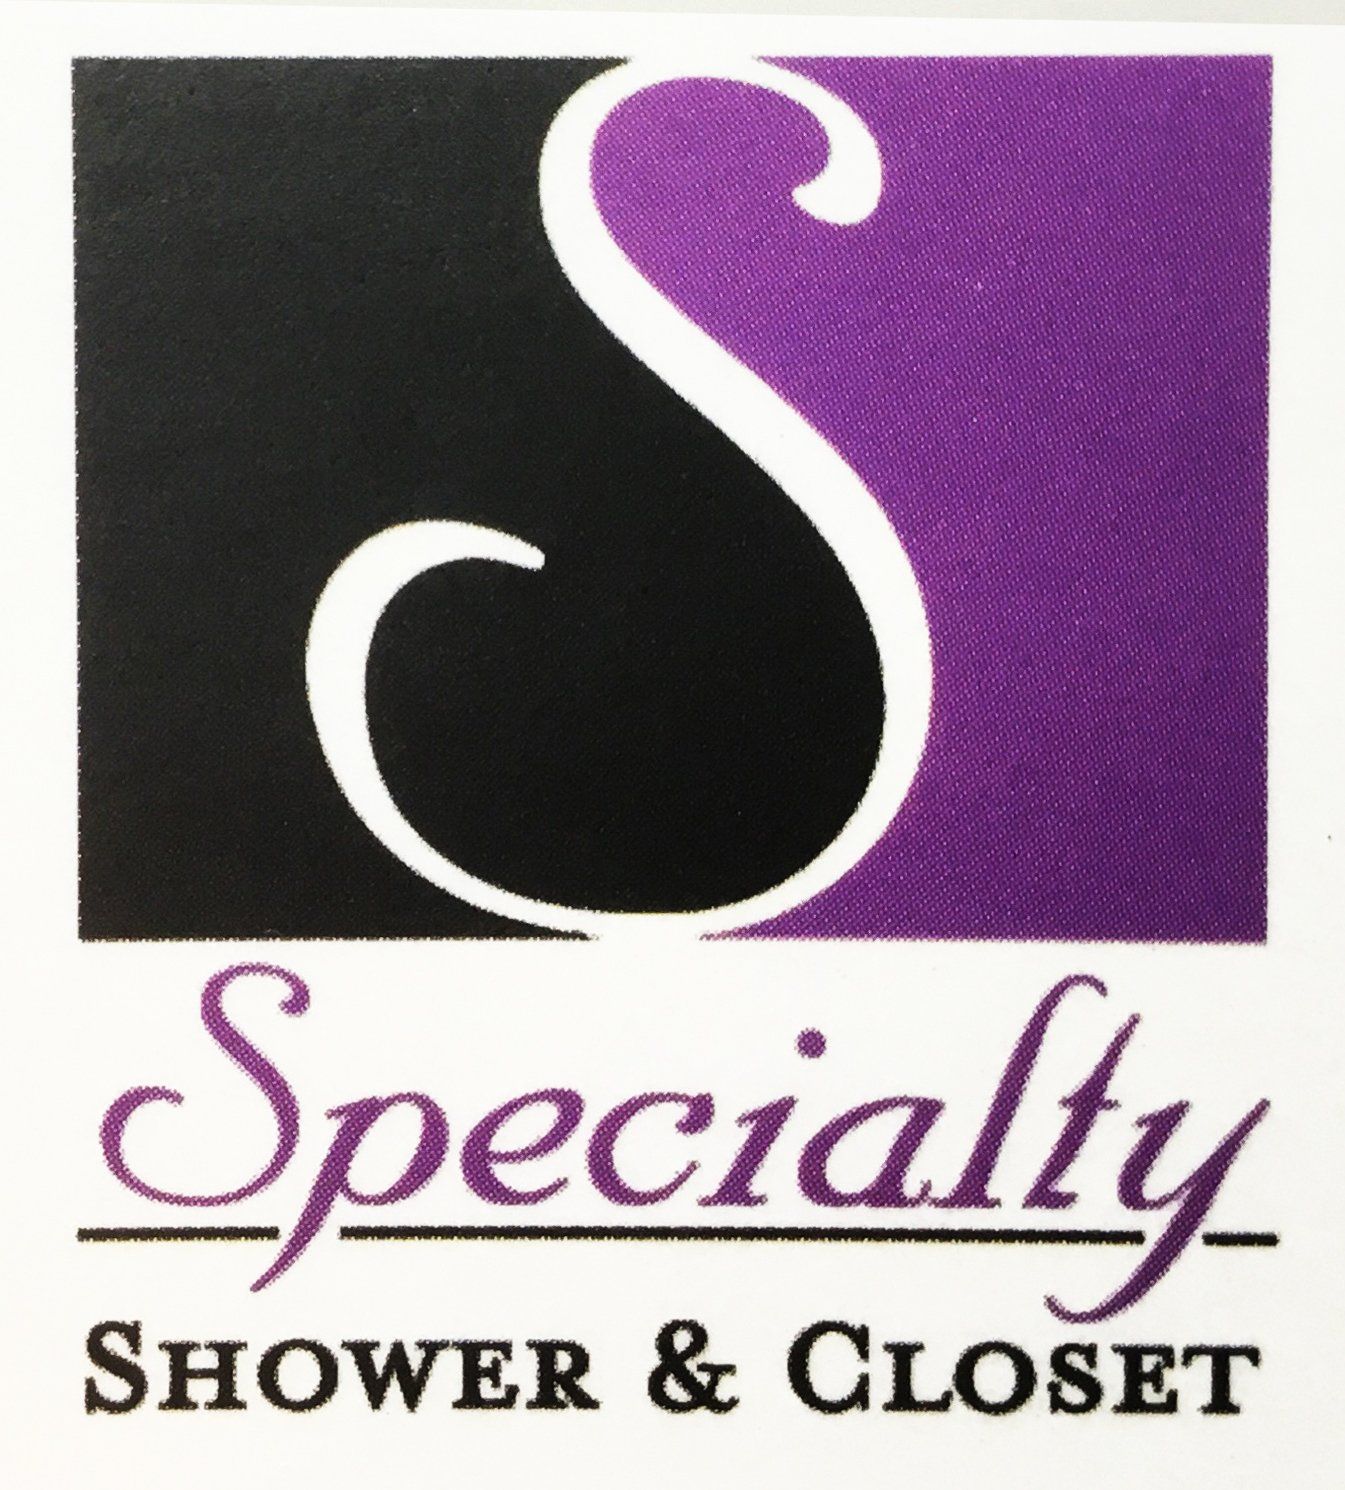 Specialty Shower & Closet - logo